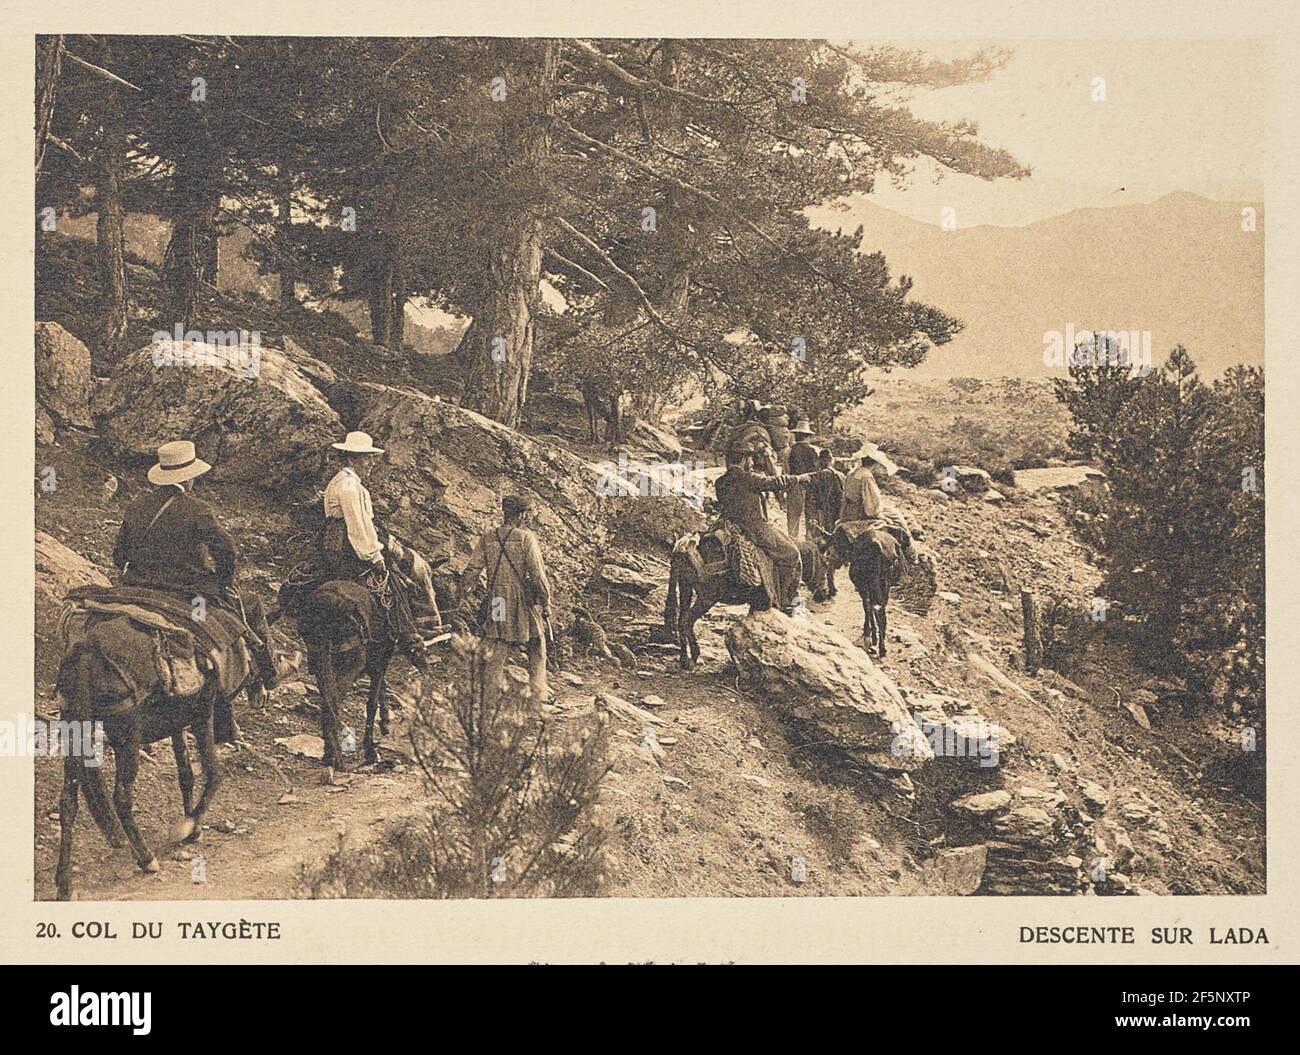 Col du Taygète. Descento sur Lada. Frédéric Boissonnas (Svizzera, 1858 - 1946) Foto Stock